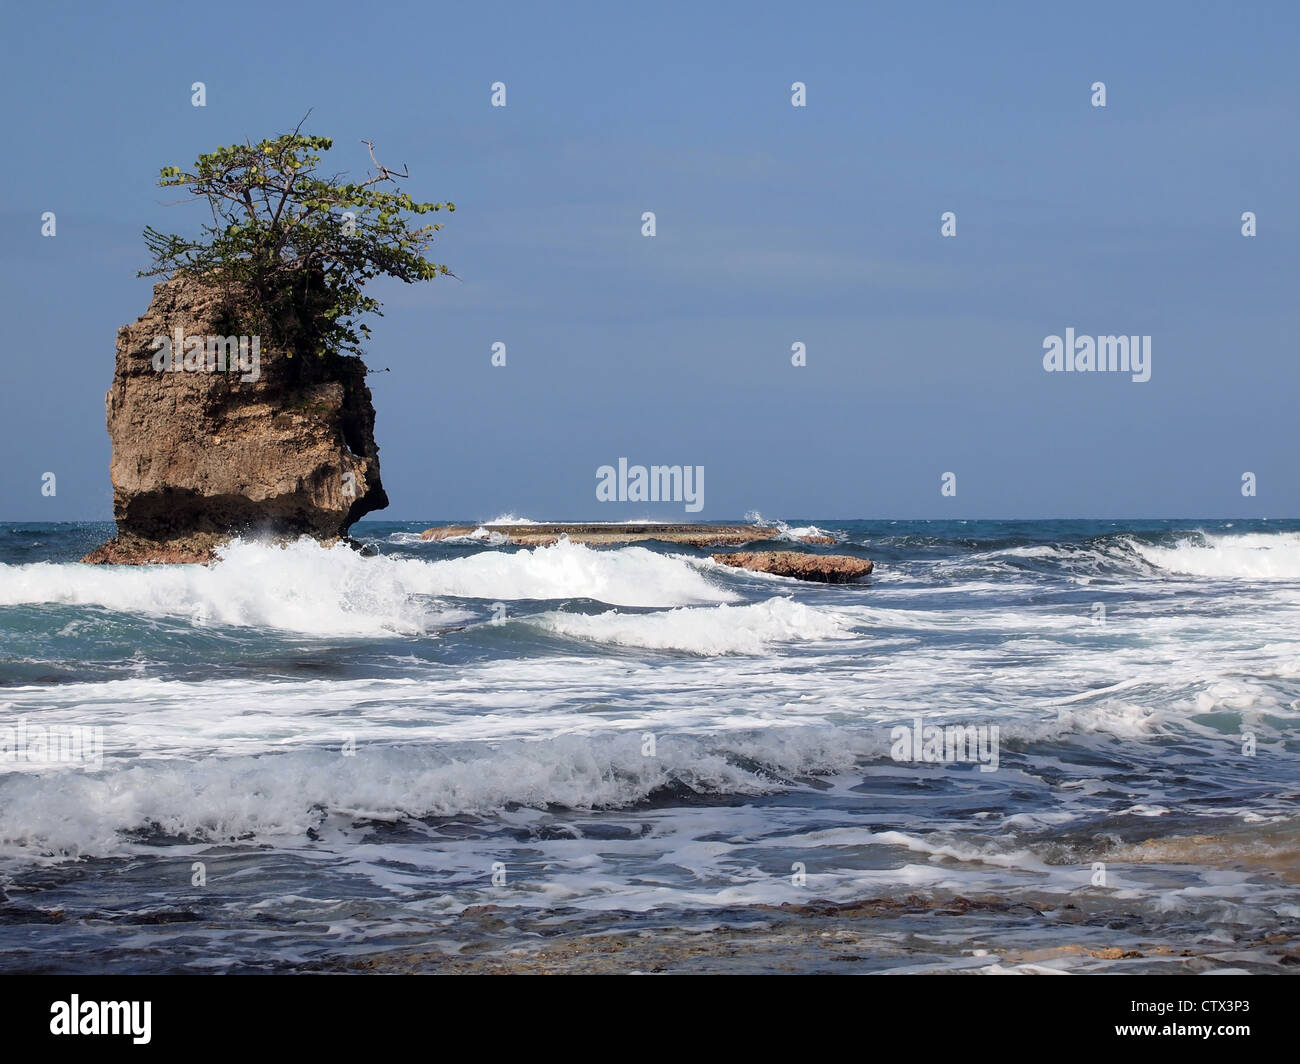 Les petites vagues se brisant sur le récif avec un îlot rocheux, la côte caraïbe du Costa Rica, Amérique Centrale Banque D'Images